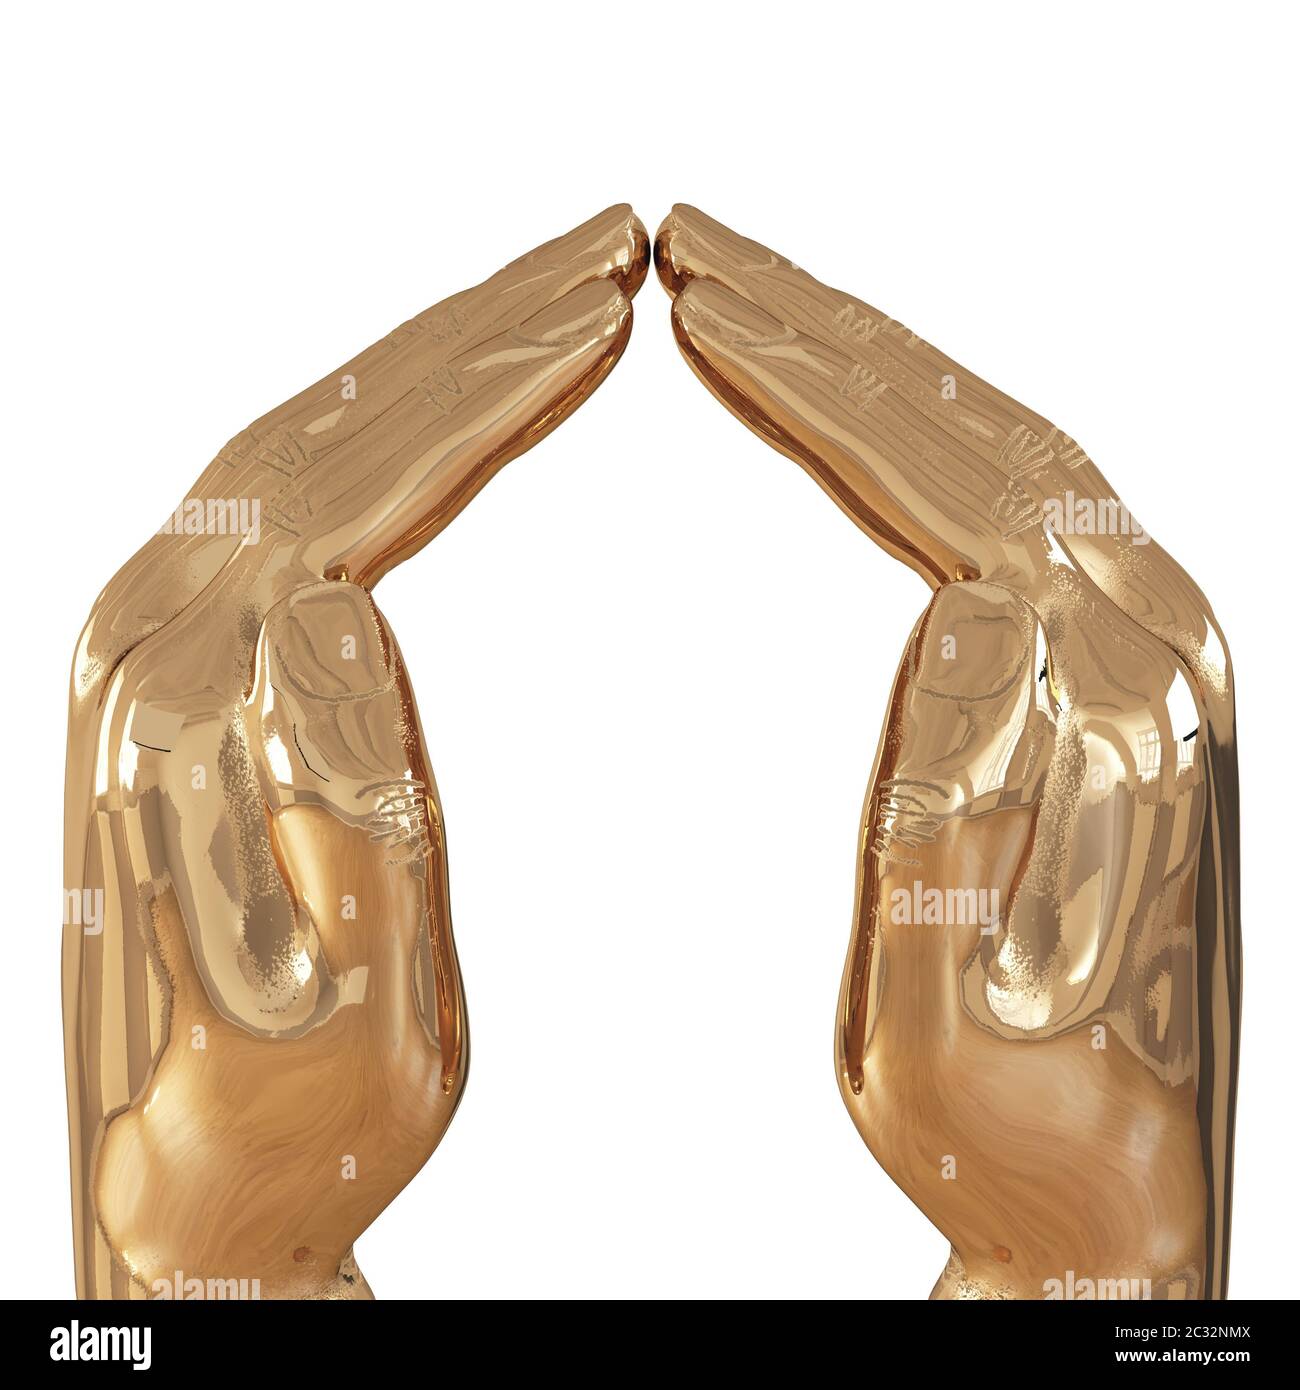 Deux mains dorées décoratives avec des doigts légèrement pliés sur un fond blanc. Vue latérale. rendu 3d Banque D'Images